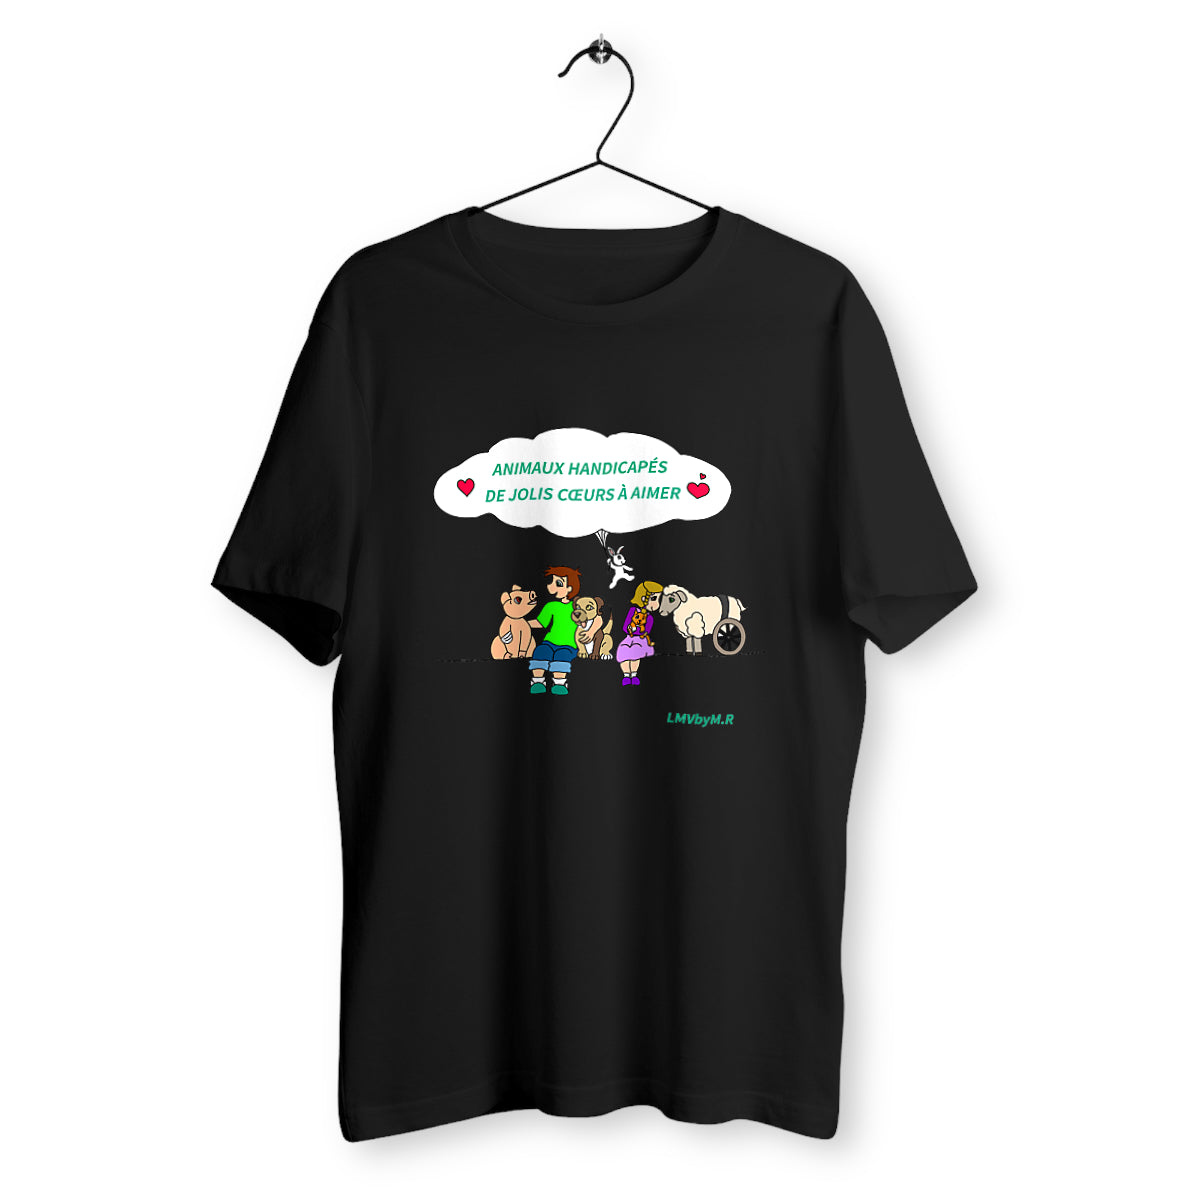 T-shirt HOMME/UNISEXE Change LMV Animaux Handicapés